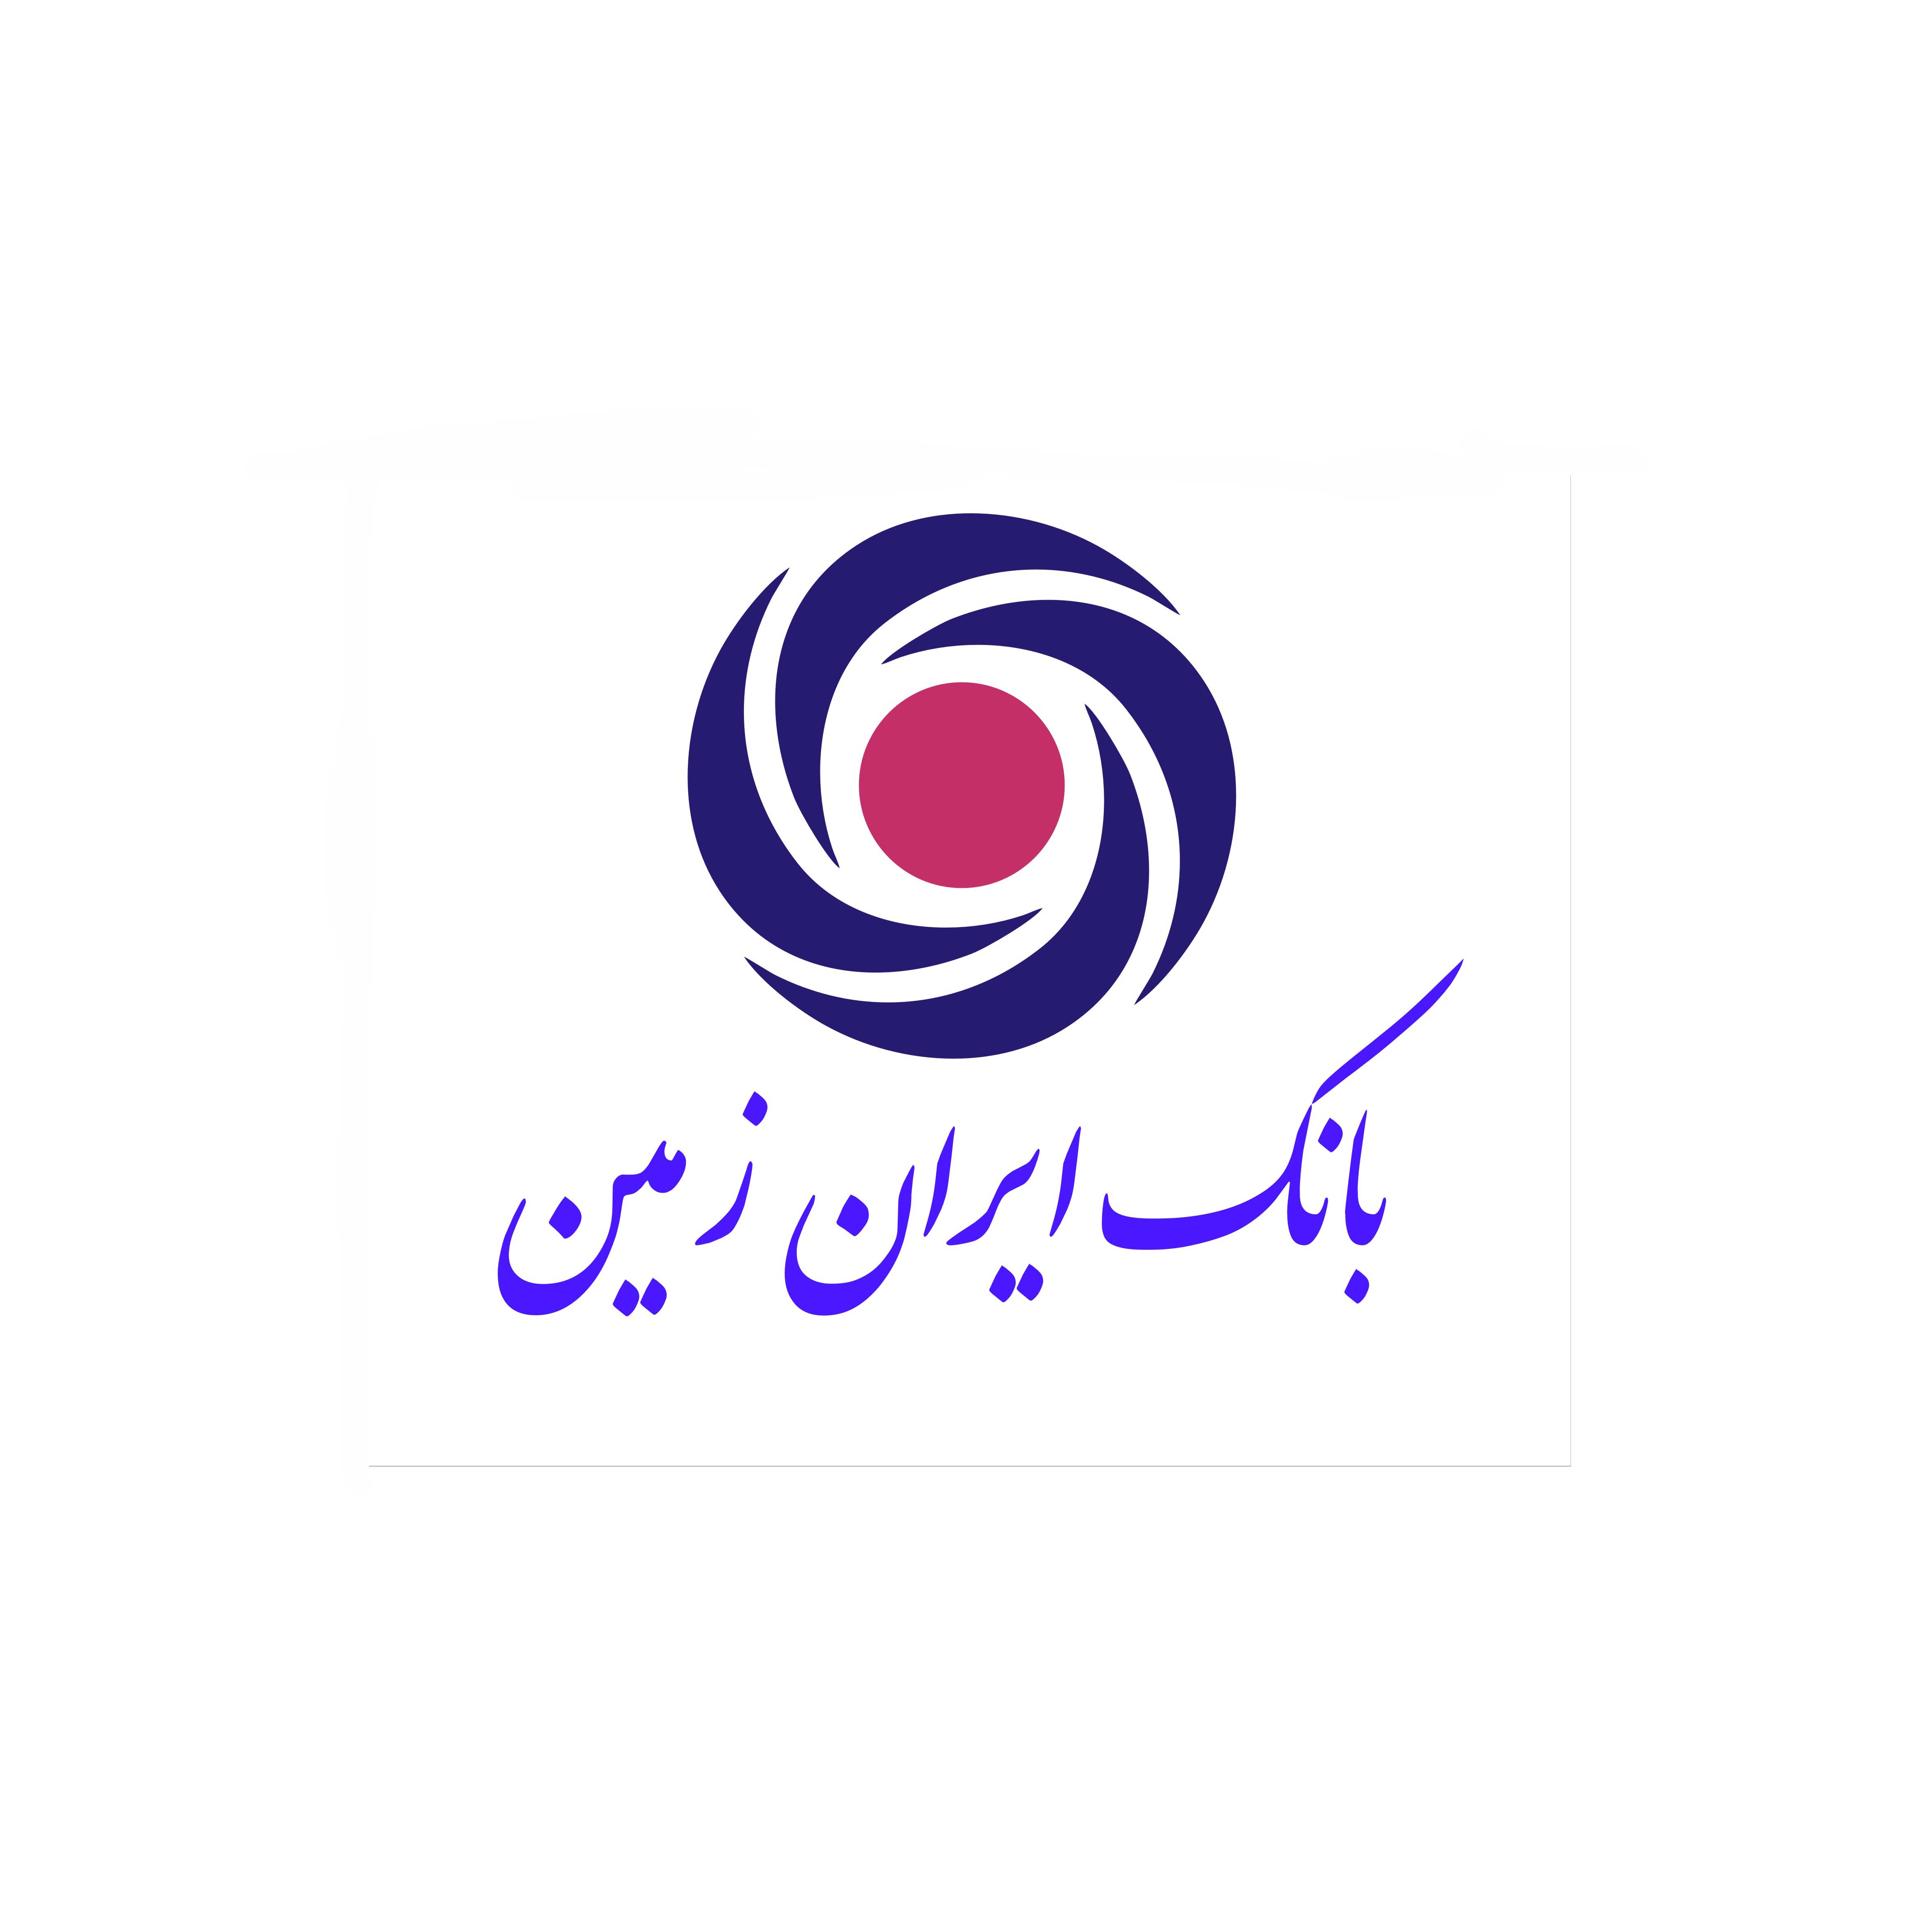 پاسخگویی بانک ایران زمین به تمامی درخواست‌های مردمی در «سامانه انتشار و دسترسی آزاد به اطلاعات»